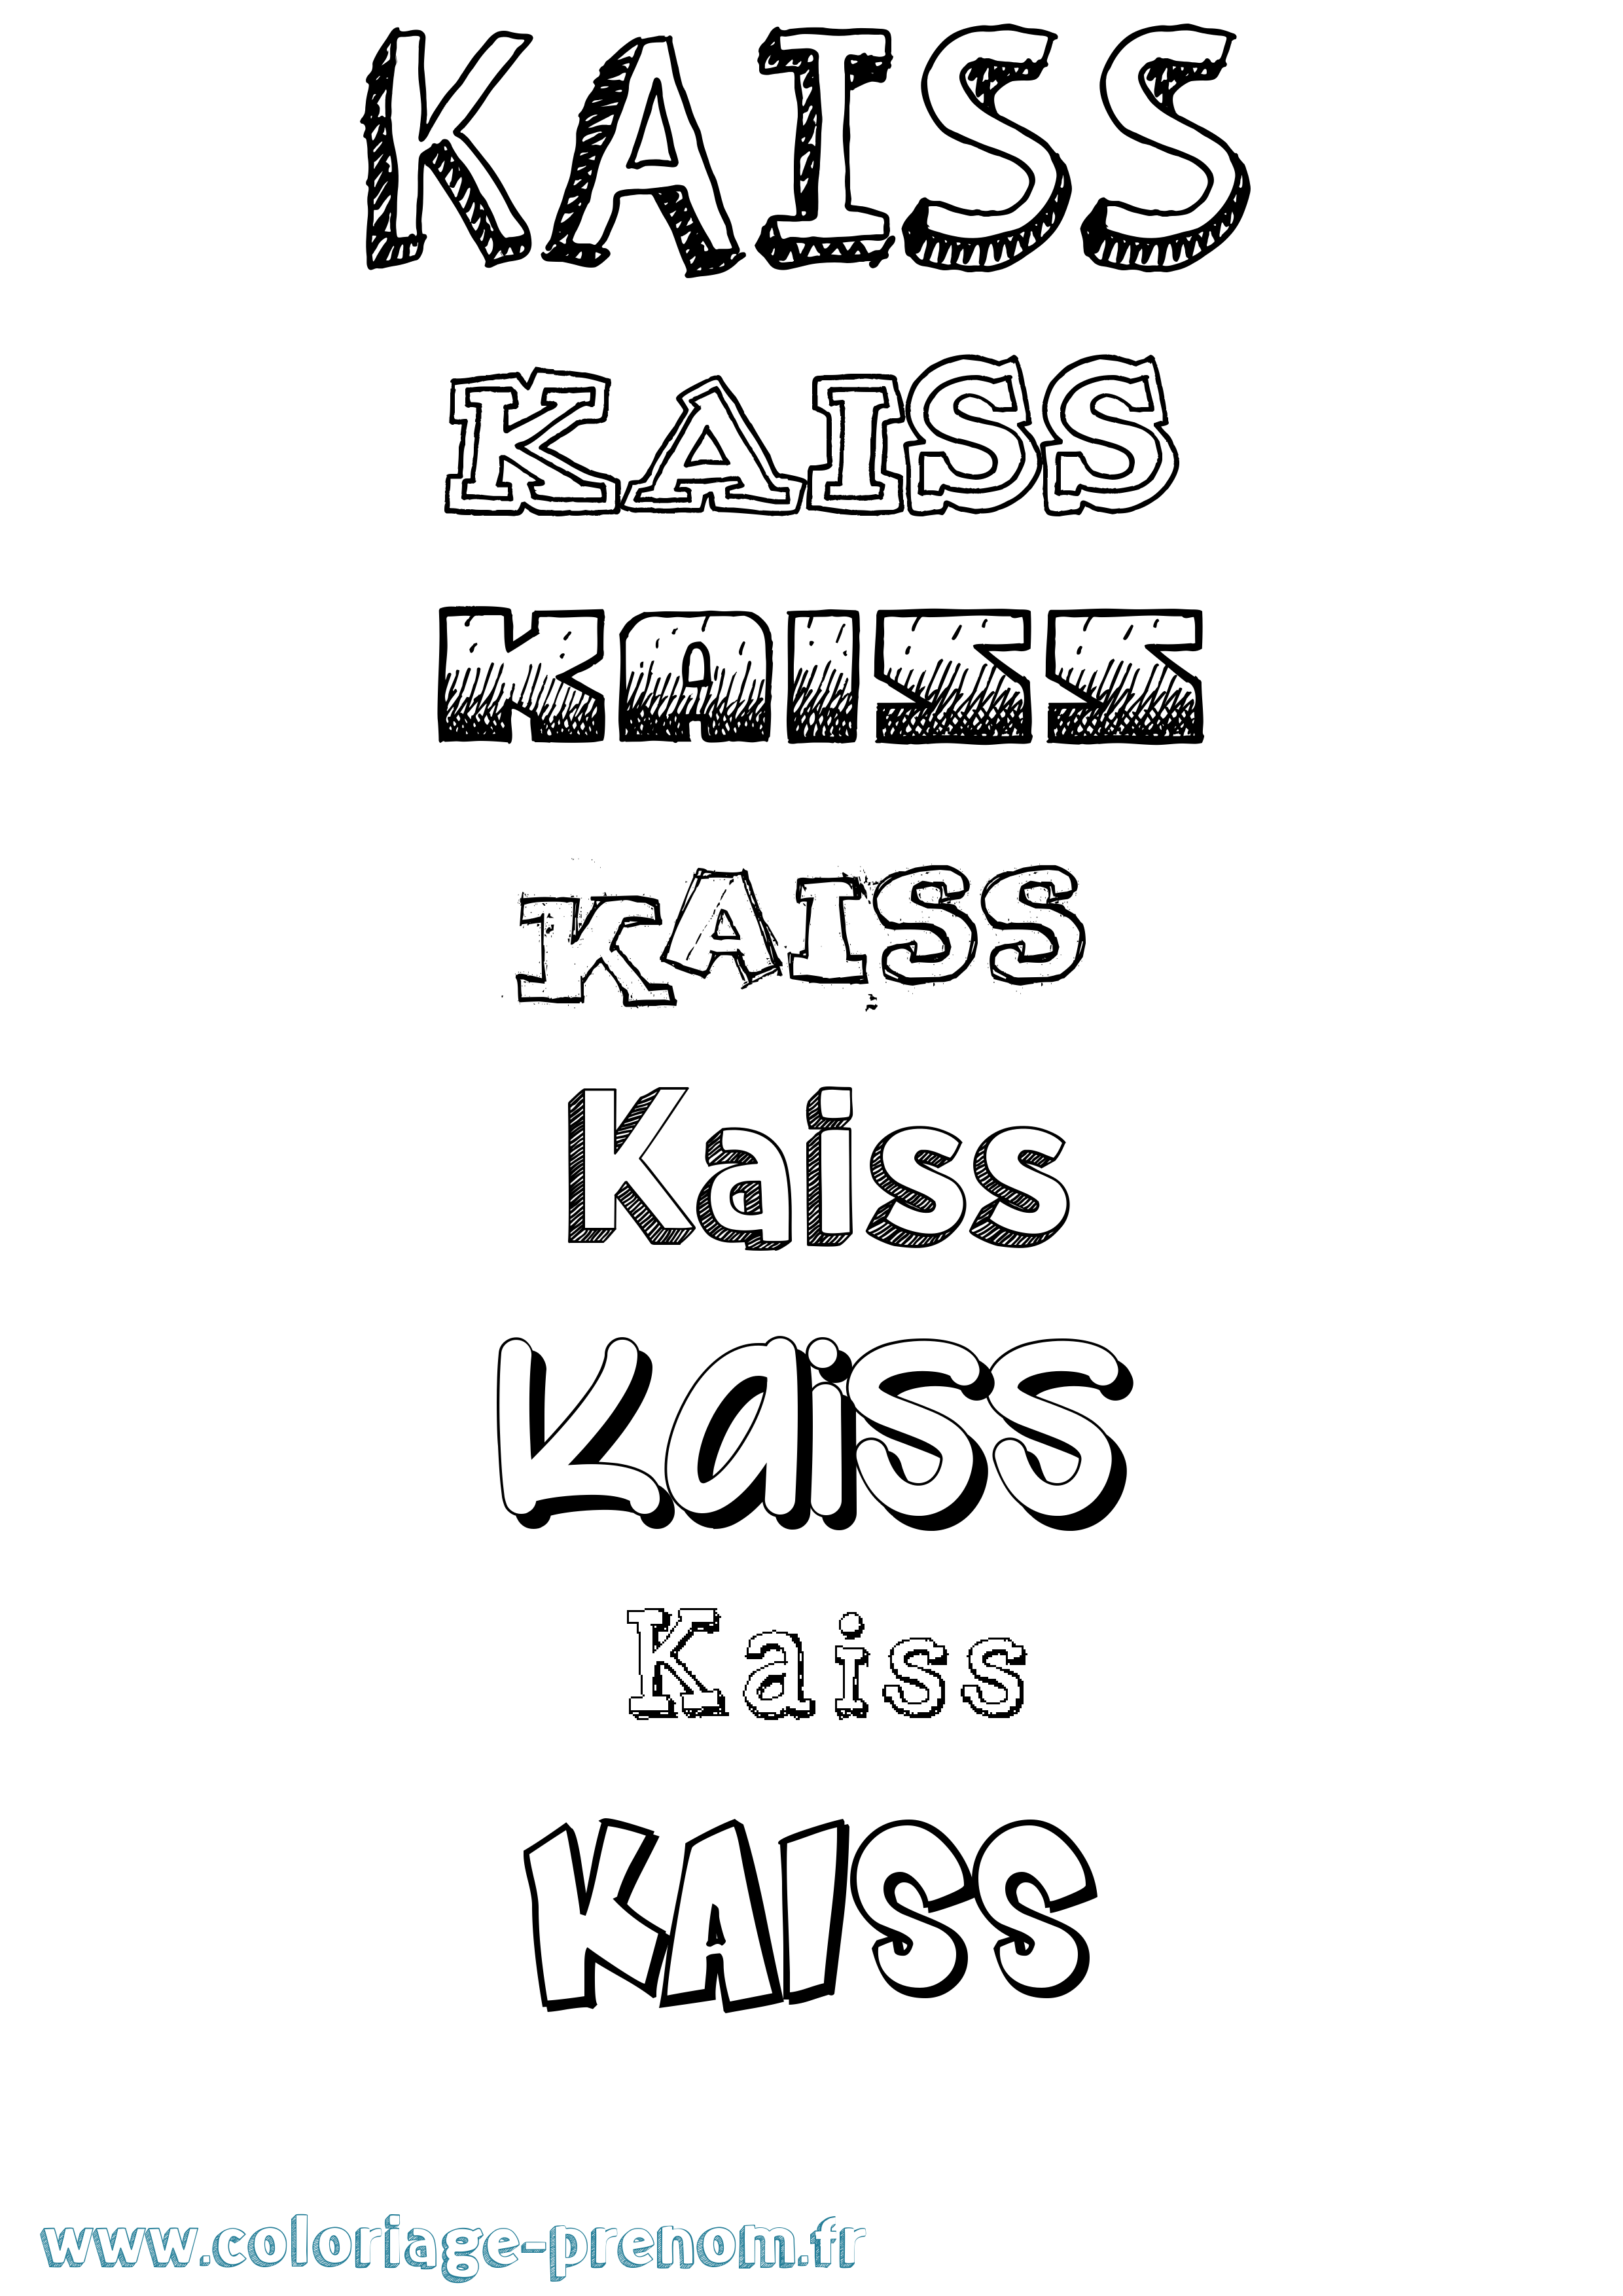 Coloriage prénom Kaiss Dessiné